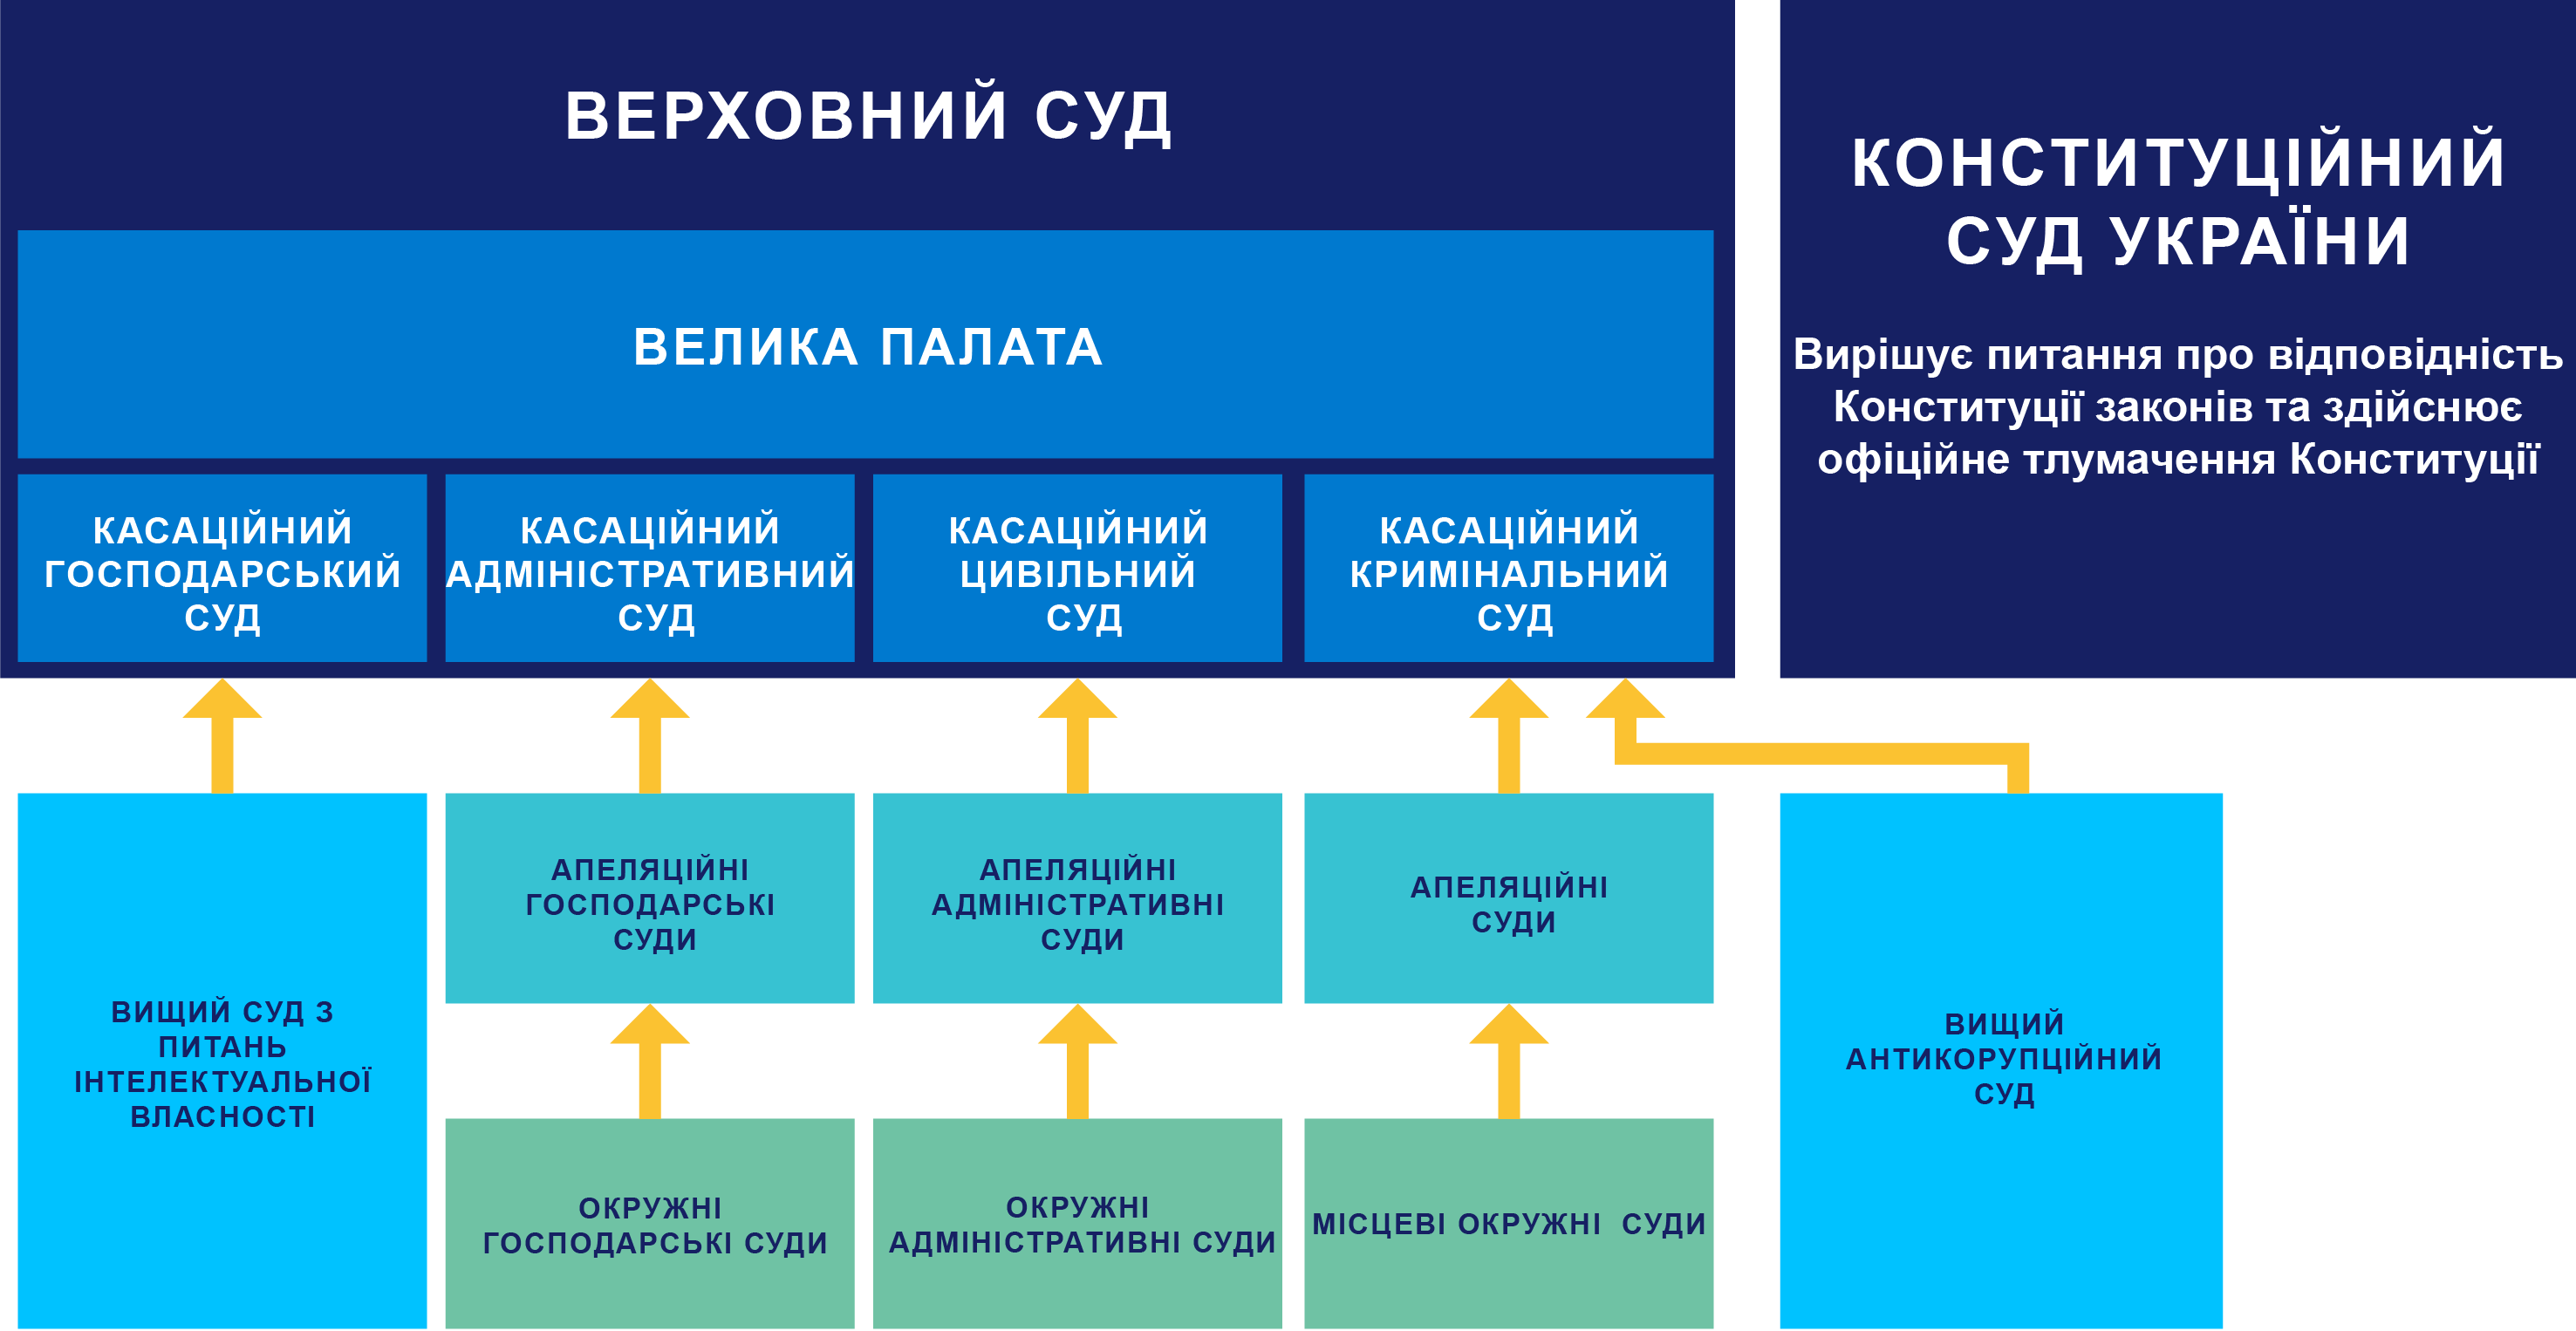 Діаграма ієрархії судової системи України